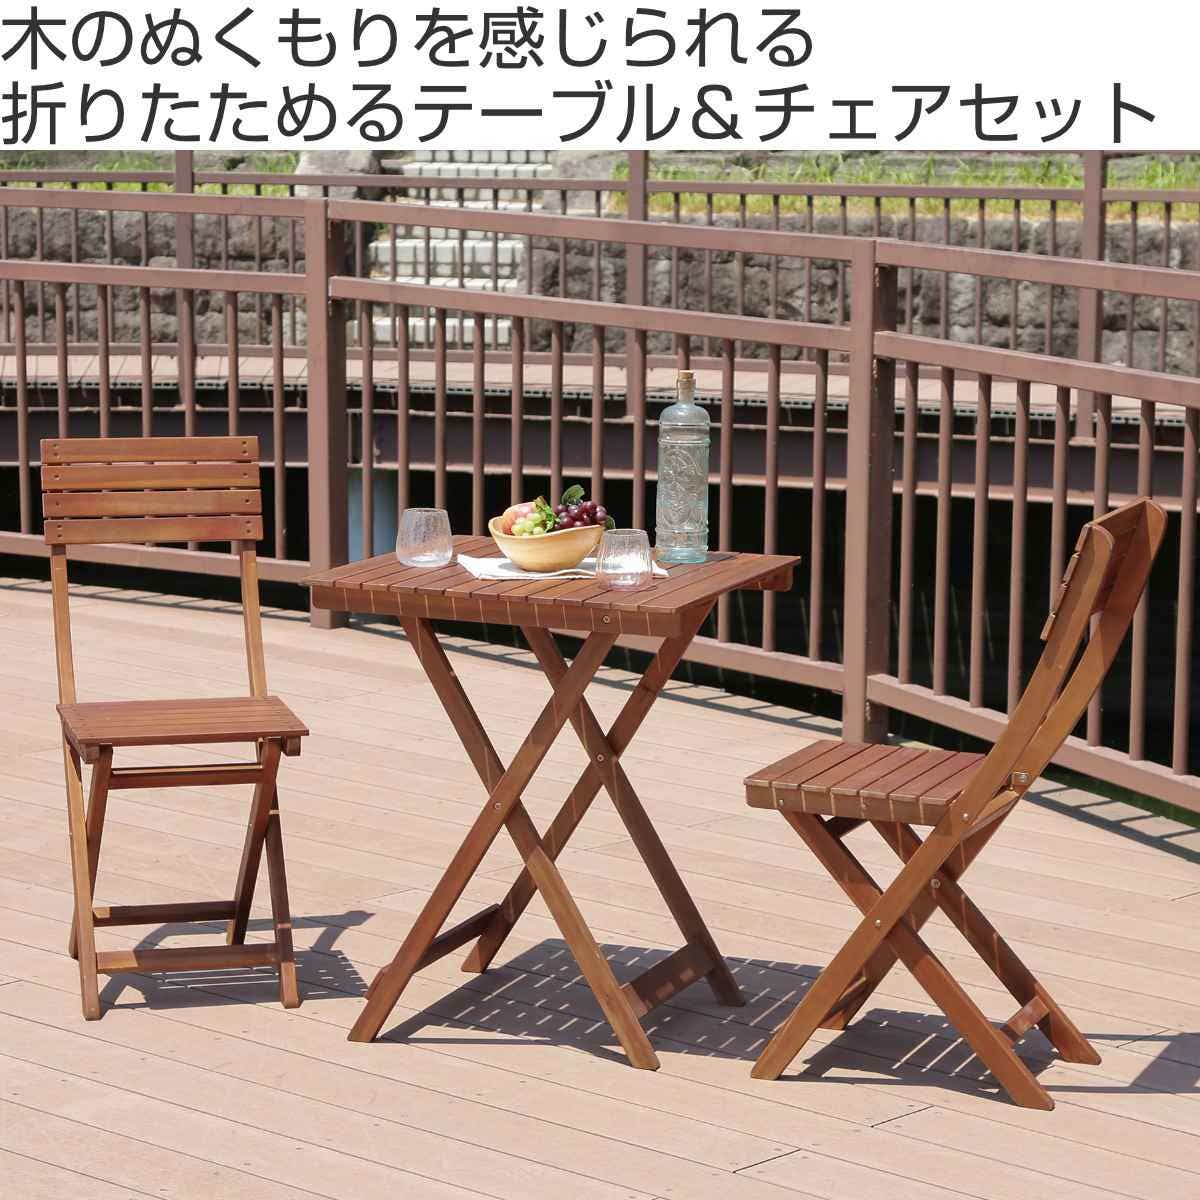 引取限定 ウッドガーデンテーブルセット 2人用 折り畳みテーブル 折り畳みチェア 木製 ガーデン家具 テラス 庭 屋外 ナチュラル バイロン